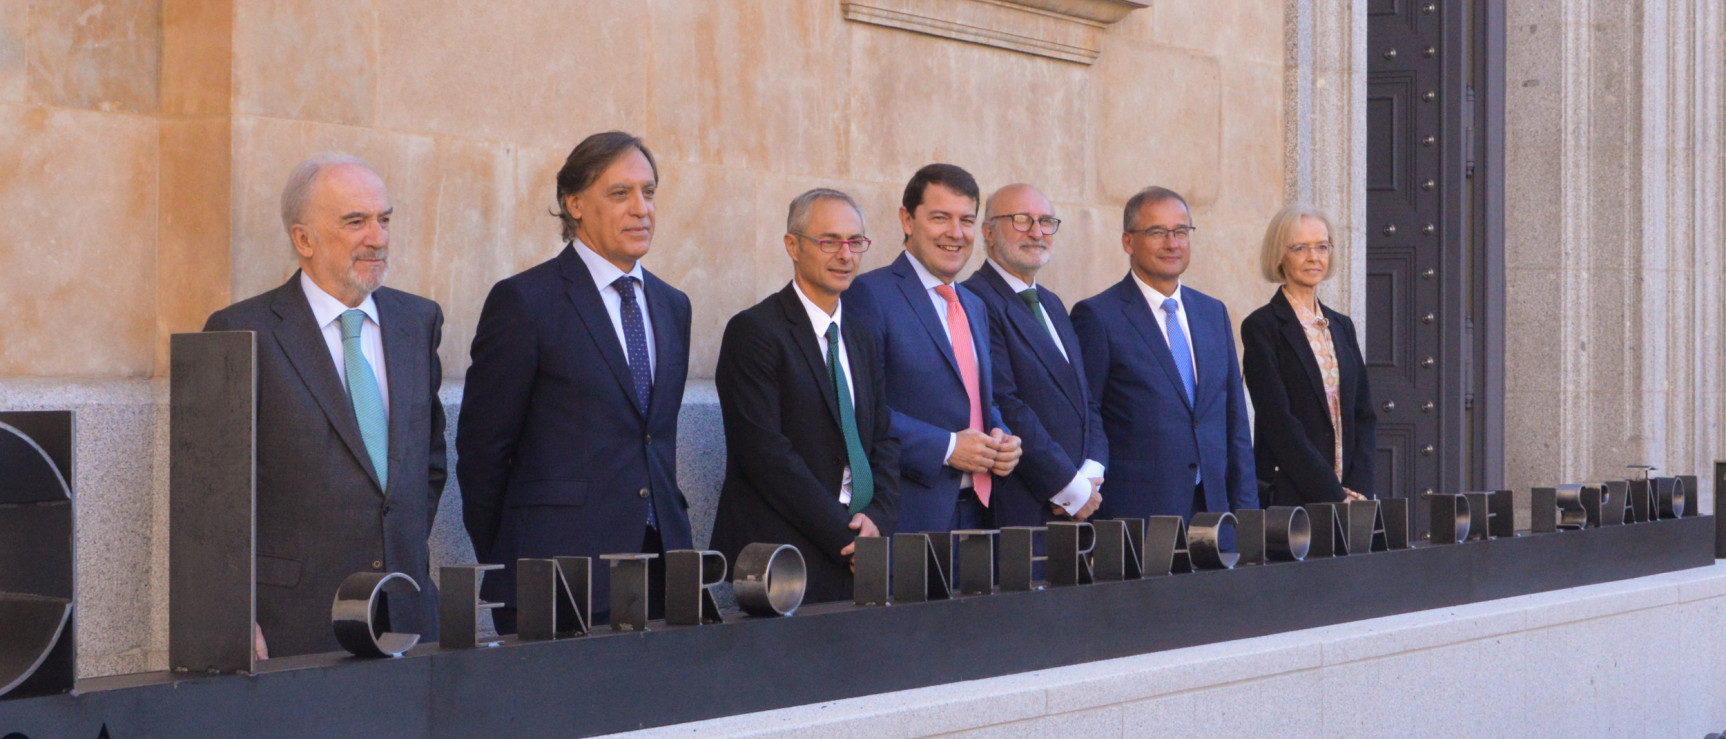 La Universidad de Salamanca inaugura el Centro Internacional del Español como referente en la investigación y divulgación del español (foto: USAL)